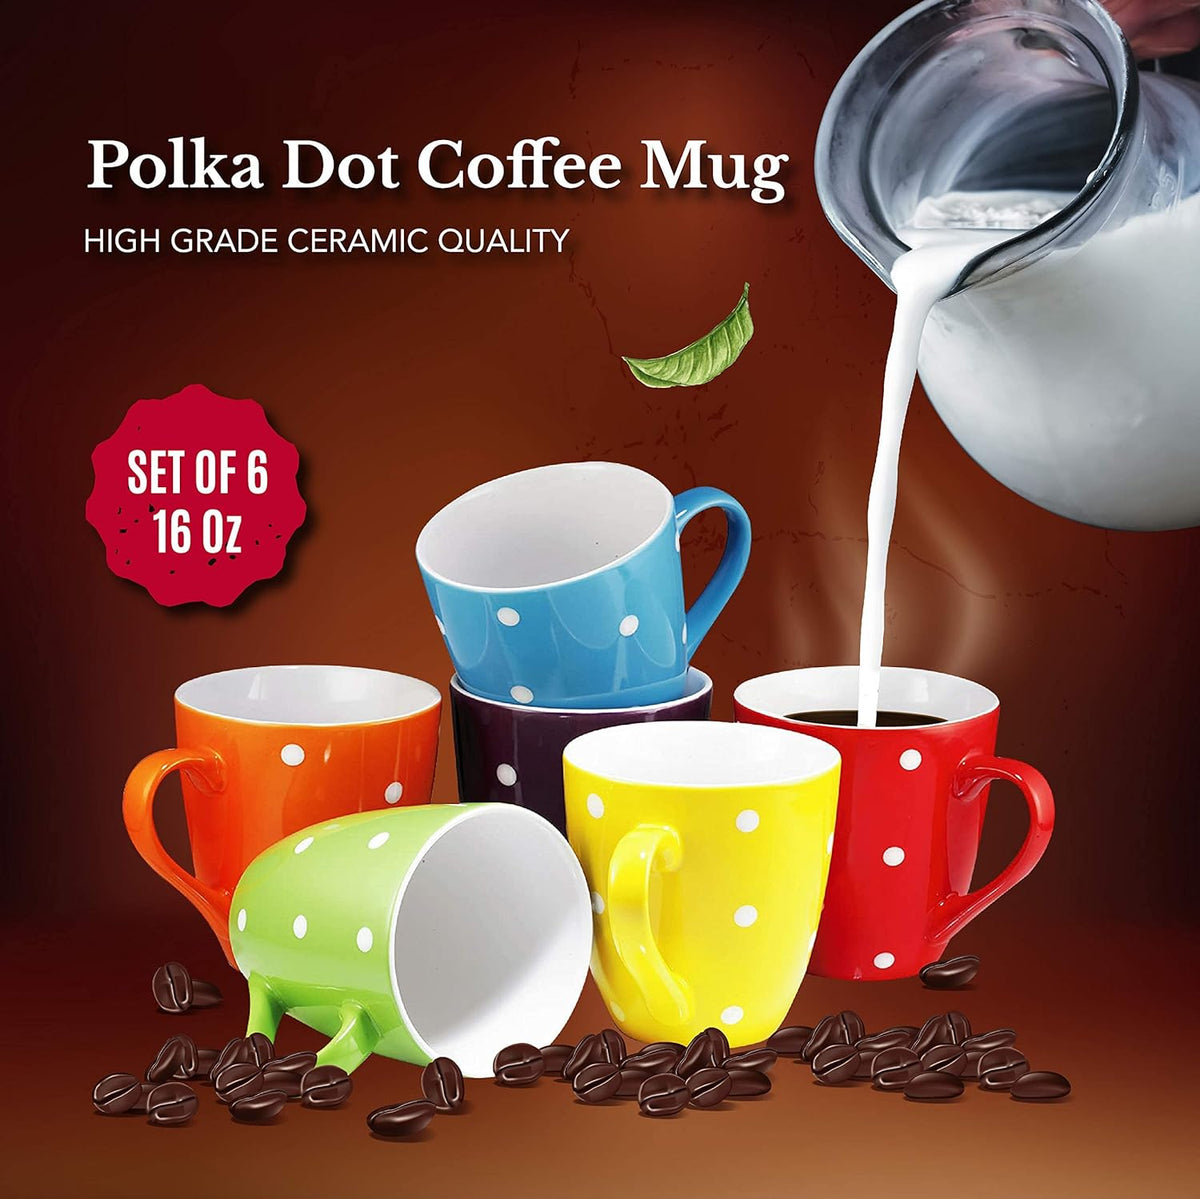 16 Oz Polka Dot Coffee Mug Set of 6, Multi Color Dot Design, Best for a Gift